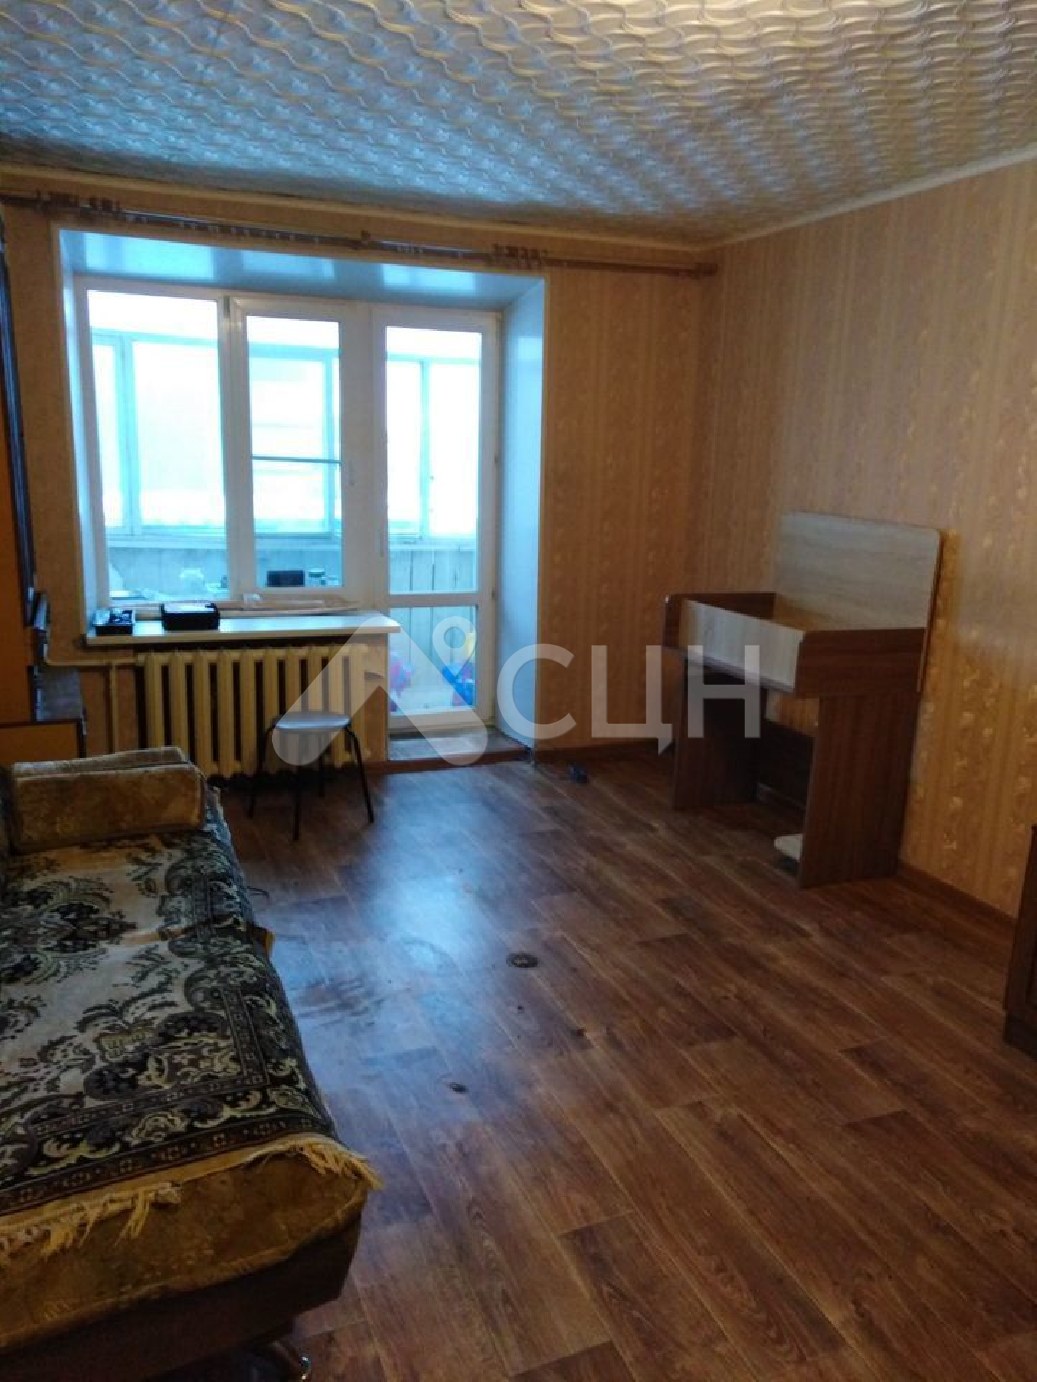 саров жилье
: Г. Саров, улица Силкина, 19, 1-комн квартира, этаж 4 из 9, продажа.